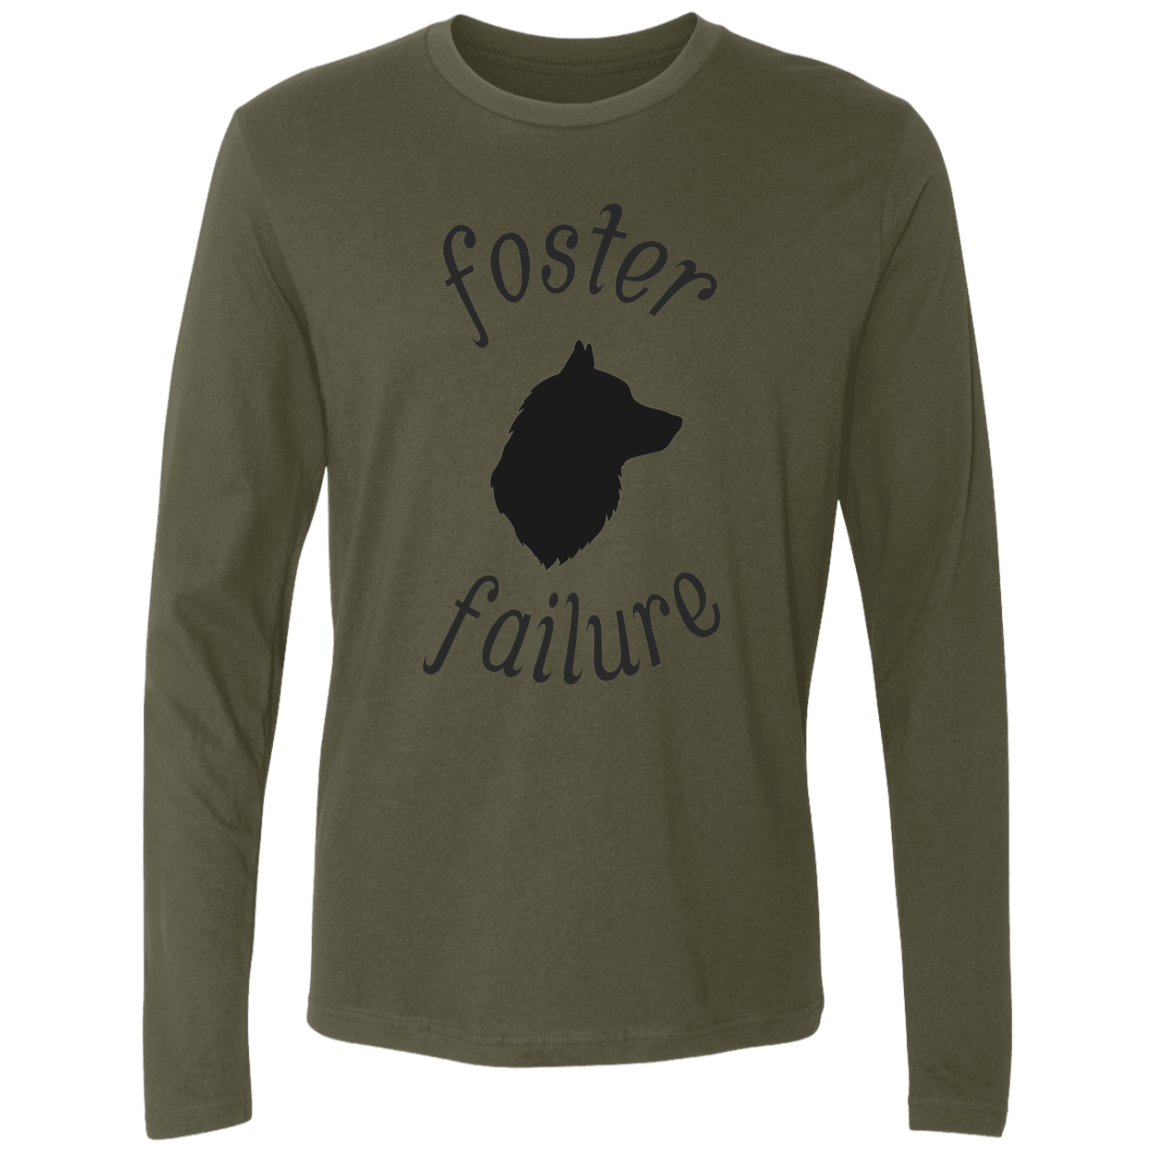 Foster Failure Dog - Long Sleeve T Shirt.